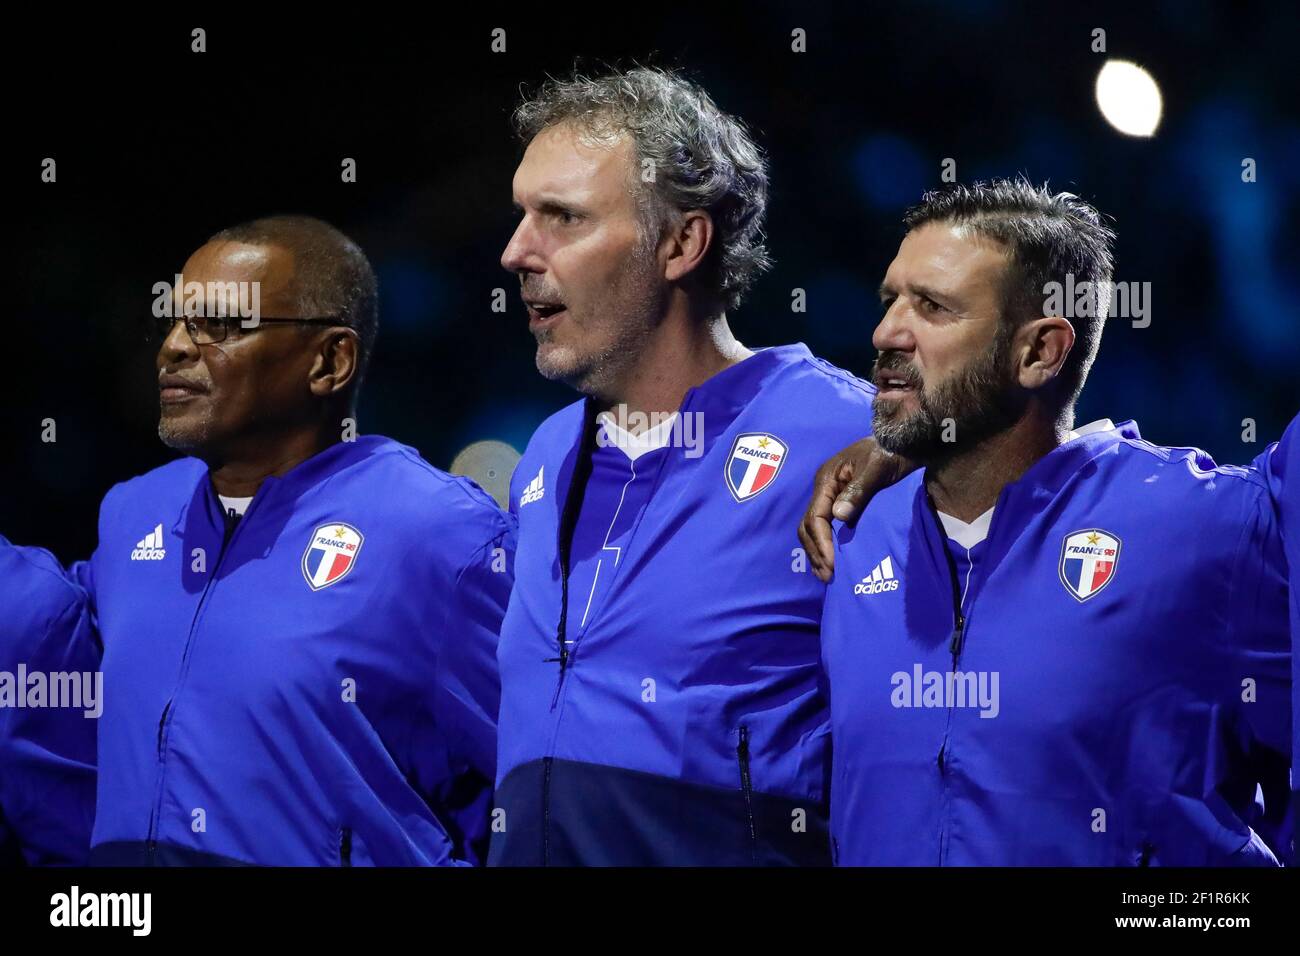 Bernard lama (Francia 98), Laurent Blanc (Francia 98), Vincent candela  (Francia 98) durante la partita di calcio amichevole 2018 tra Francia 98 e  FIFA 98 il 12 giugno 2018 presso la U